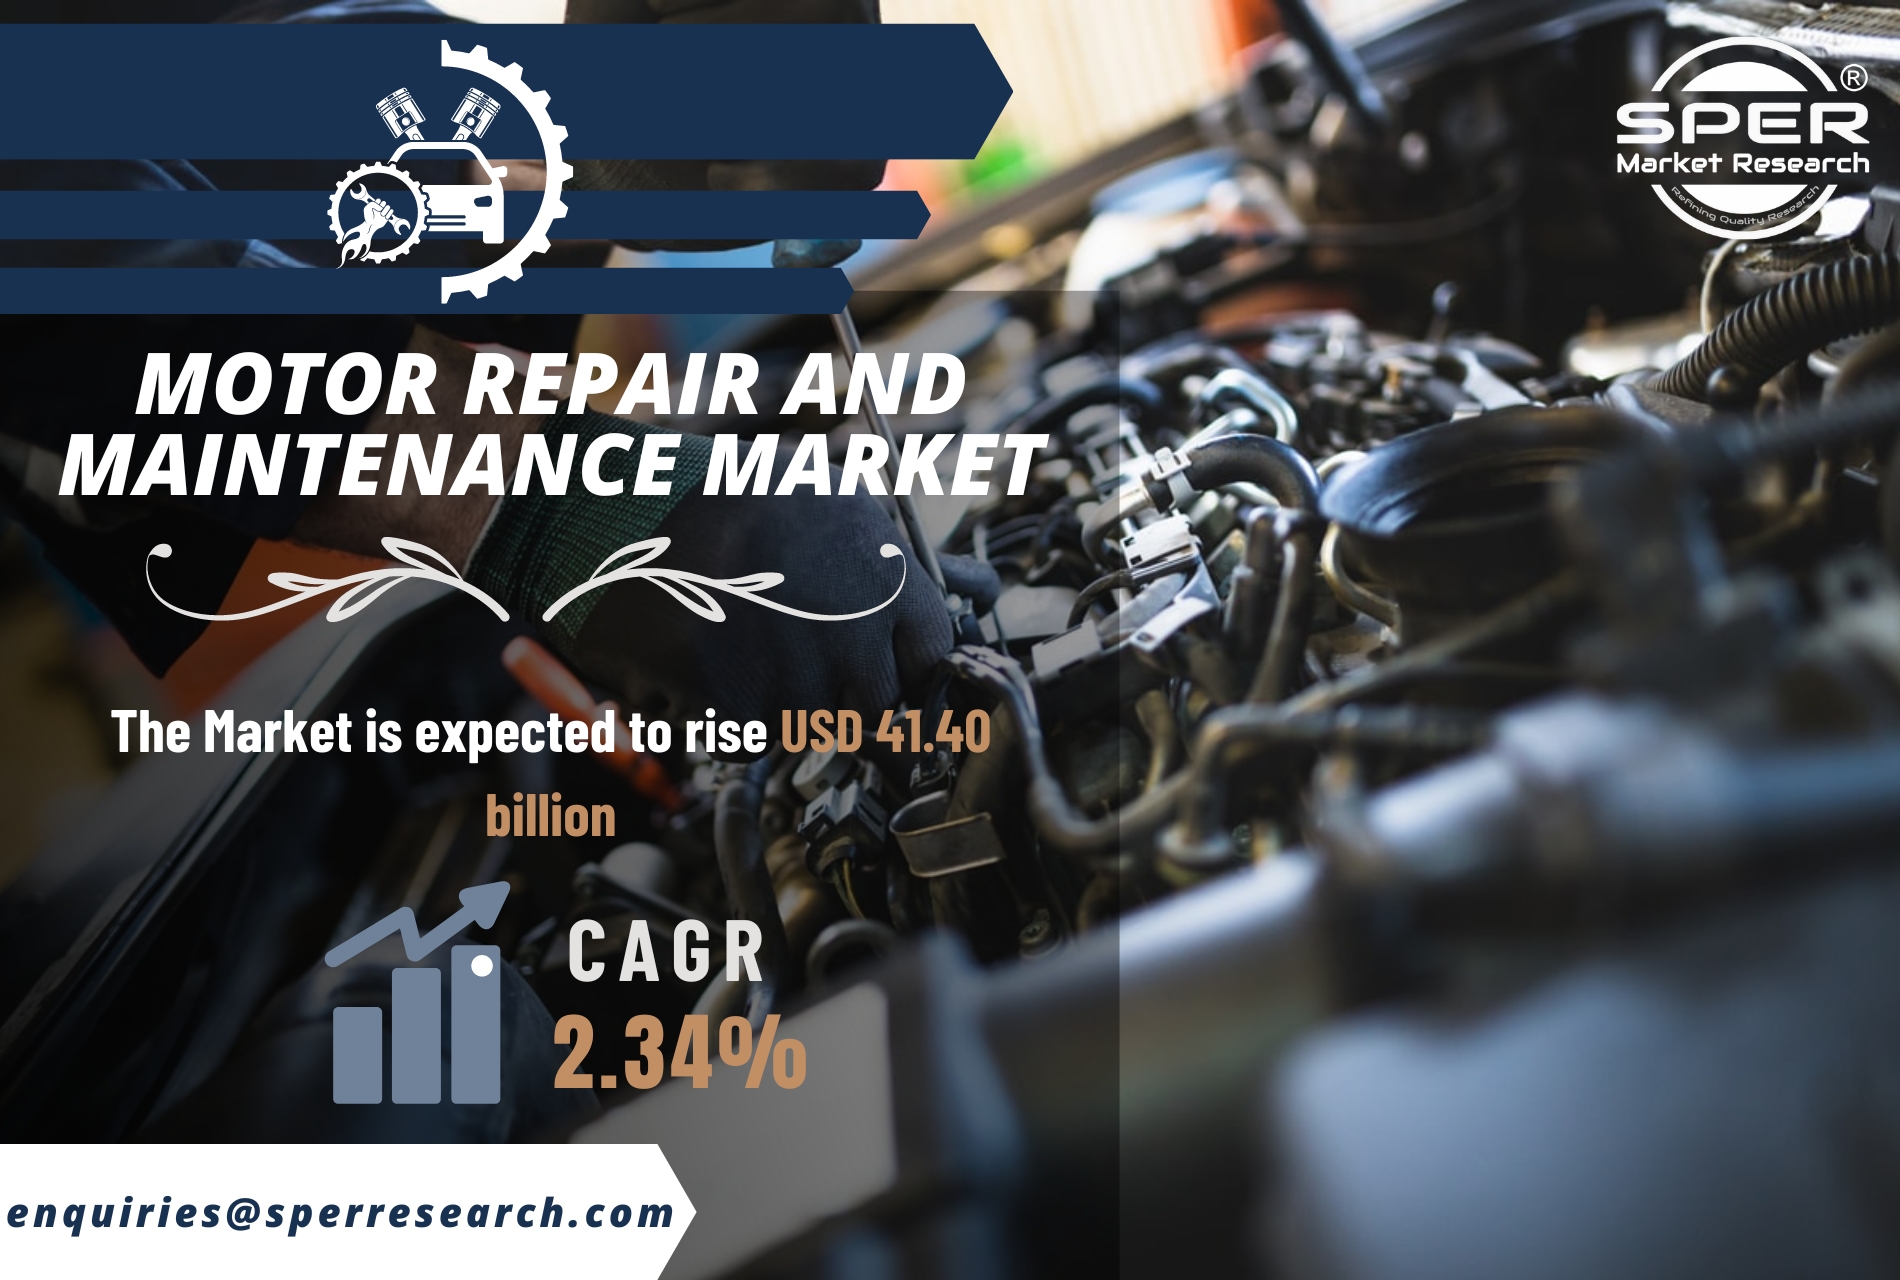 Motor Repair and Maintenance Market